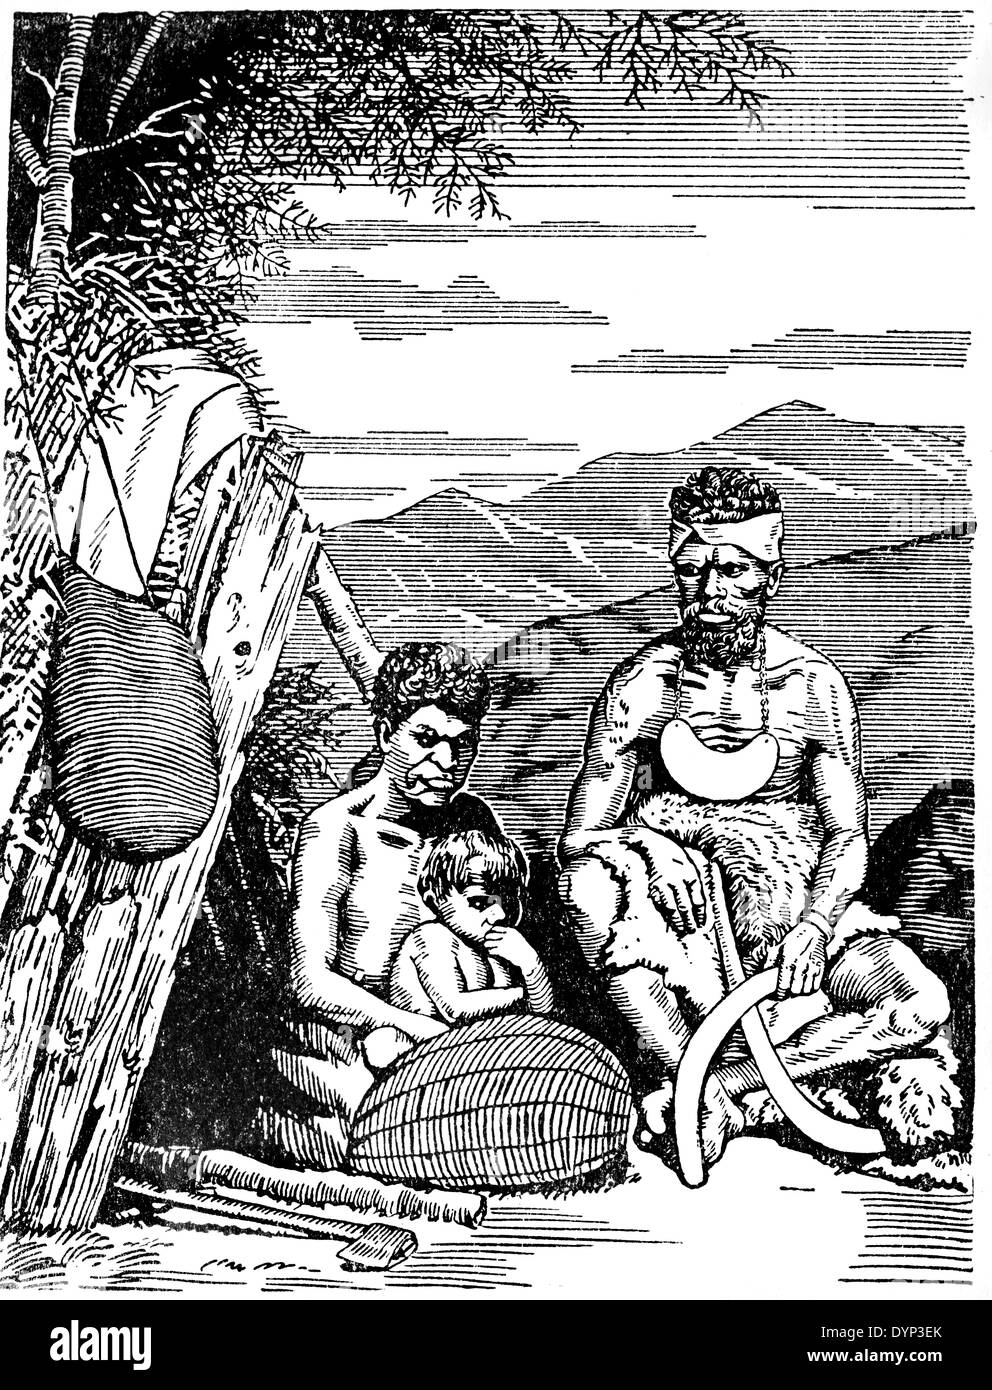 Los indígenas australianos familia, ilustración de la Enciclopedia soviética, 1926 Foto de stock